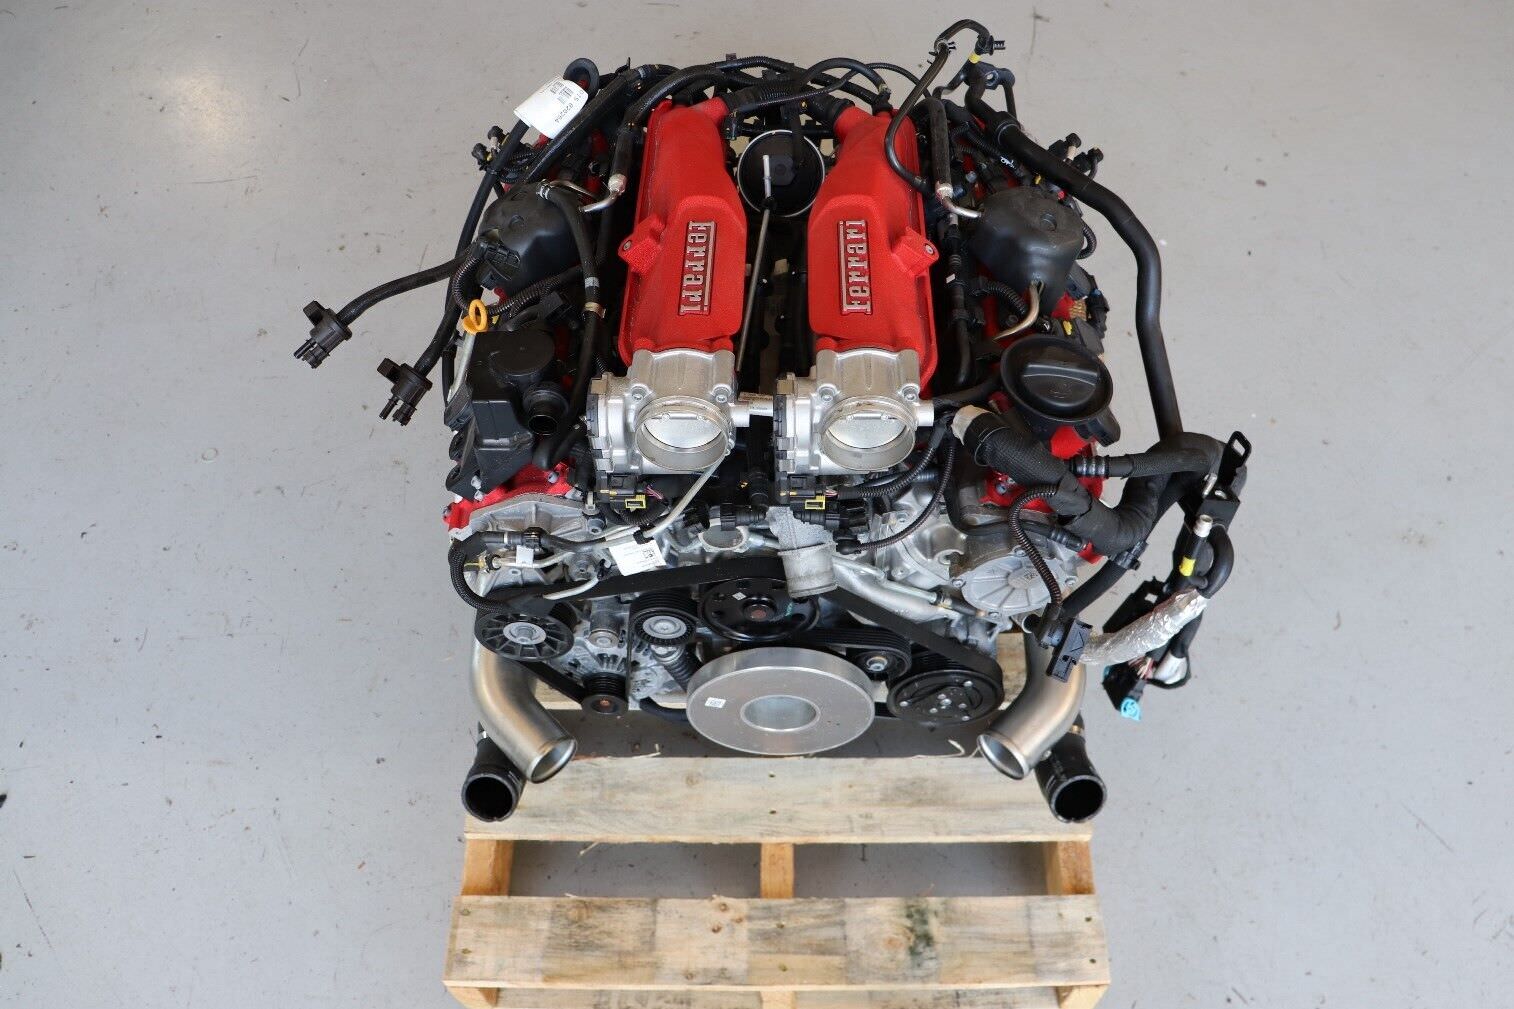 Ferrari Portofino V8 Engine